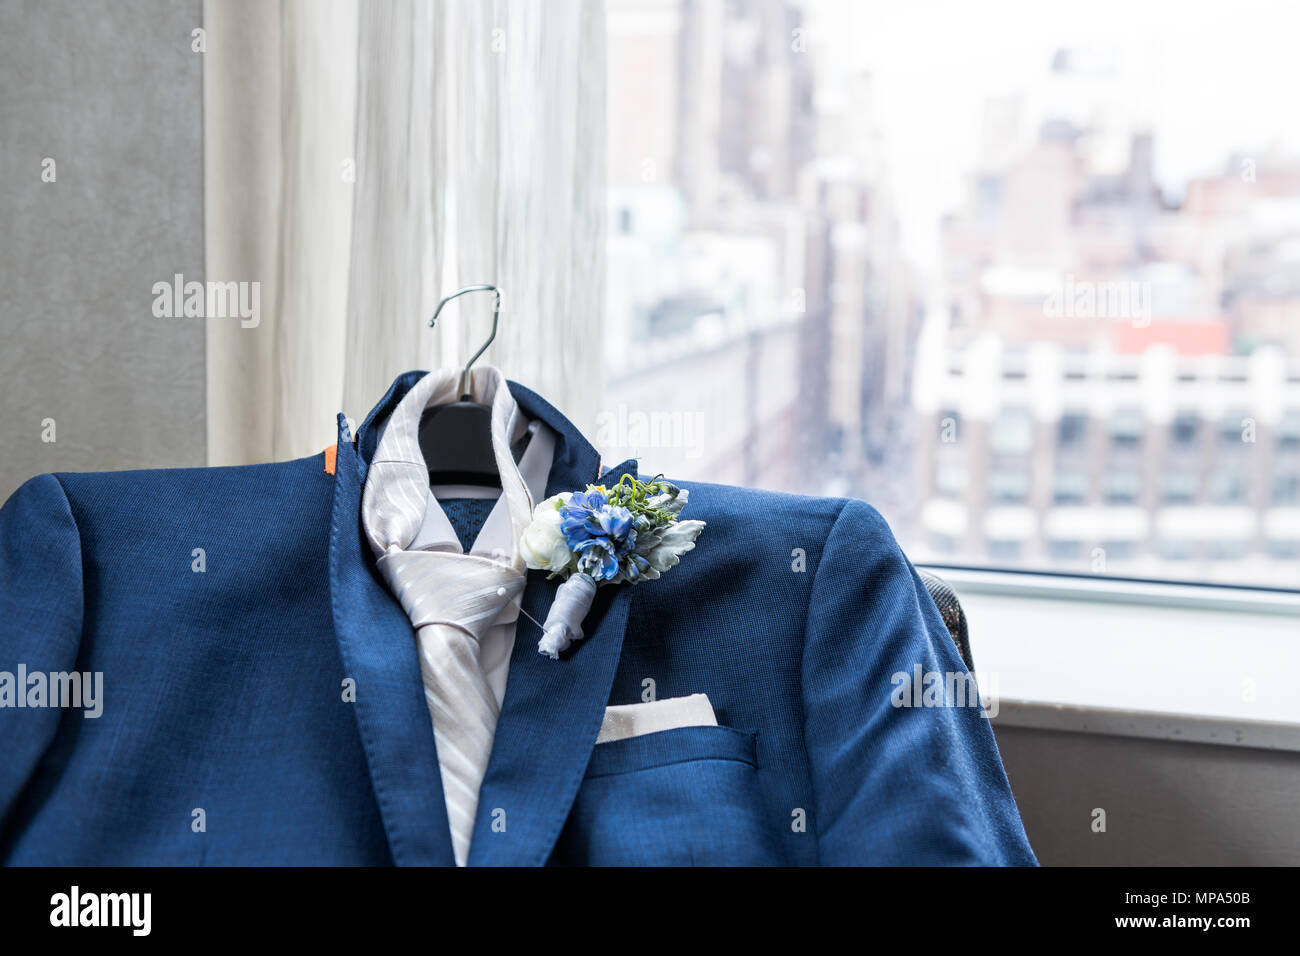 Los hombres de traje y corbata novio closeup con flor en el ojal, preparación de boda pin, pañuelo de bolsillo, ventana con vista urbana de la ciudad Nueva York NYC Ma